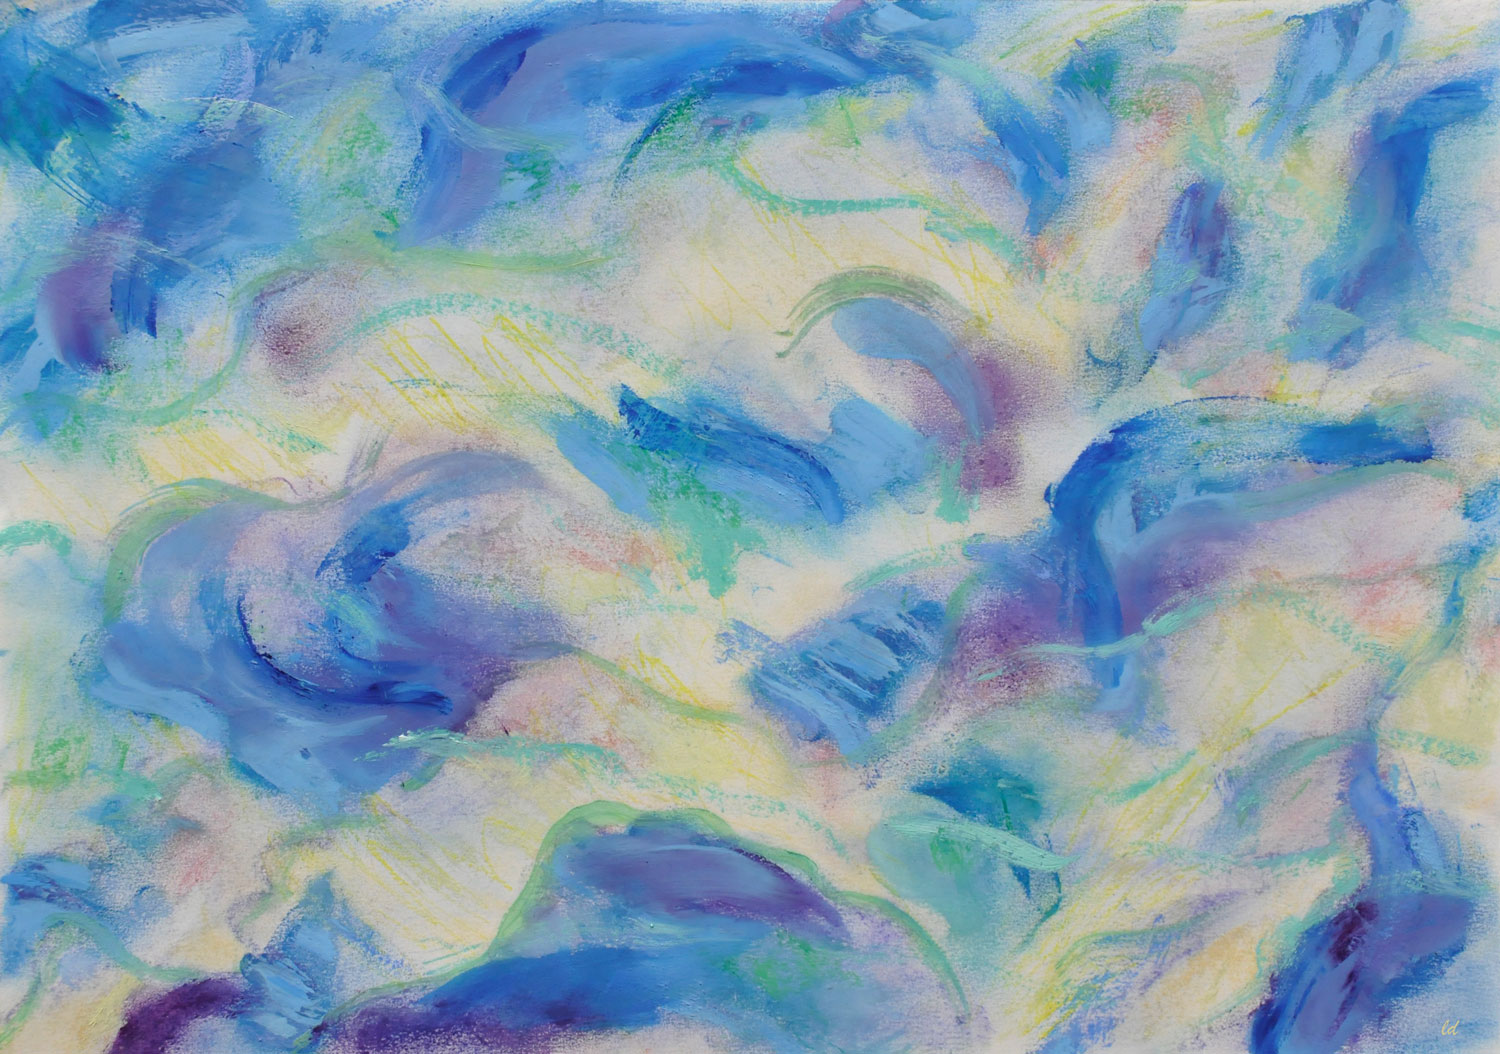 Etude de nuages, 6. Crayon de couleur, pastel tendre et huile sur papier, 30x42, 2021